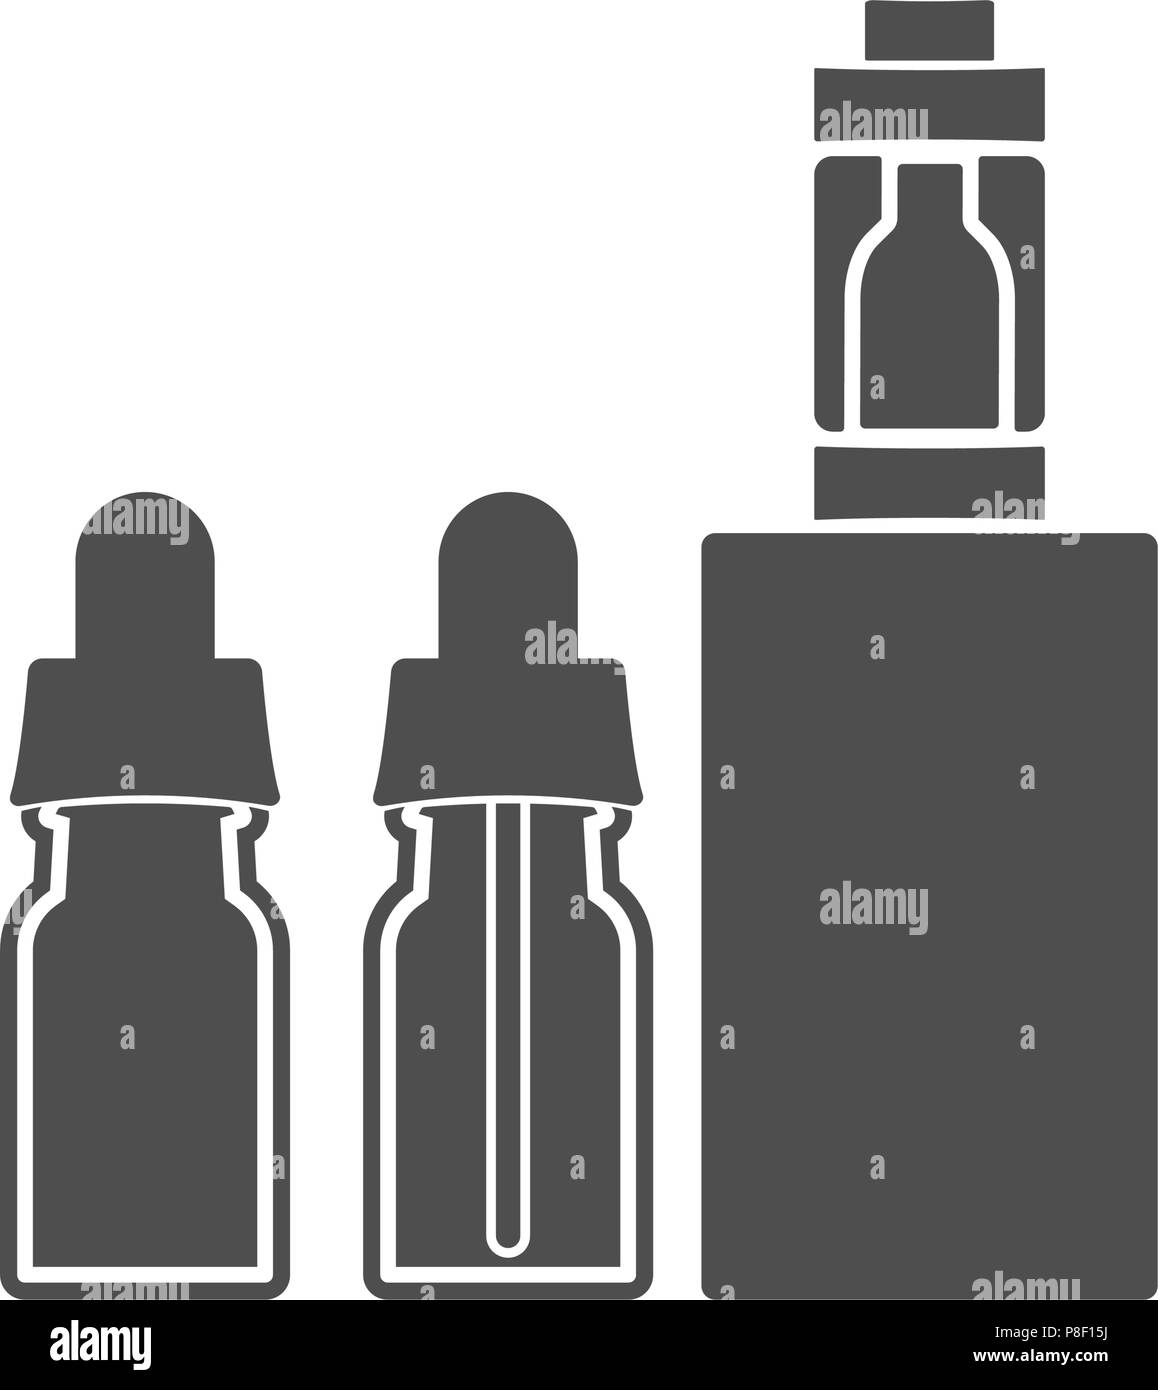 Elektronische Zigarette mit Flaschen Flüssigkeit. Vector Illustration Stock Vektor